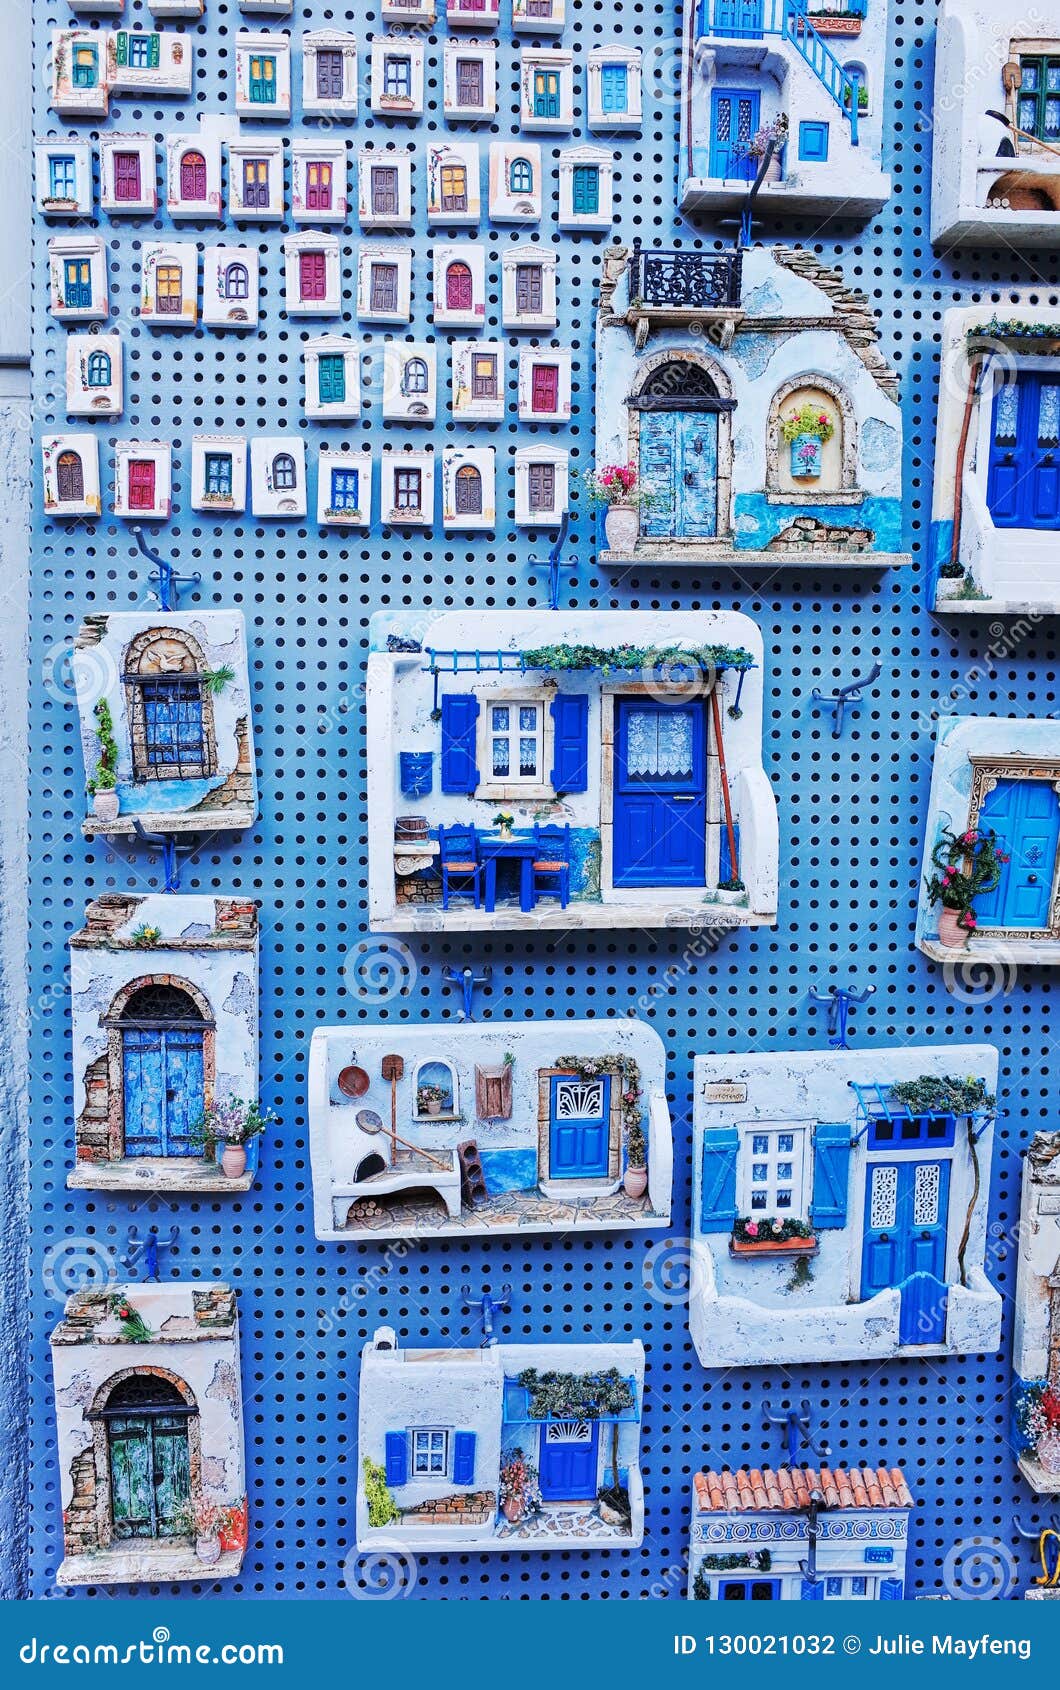 Aimant de réfrigérateur Santorini Greece fridge magnet